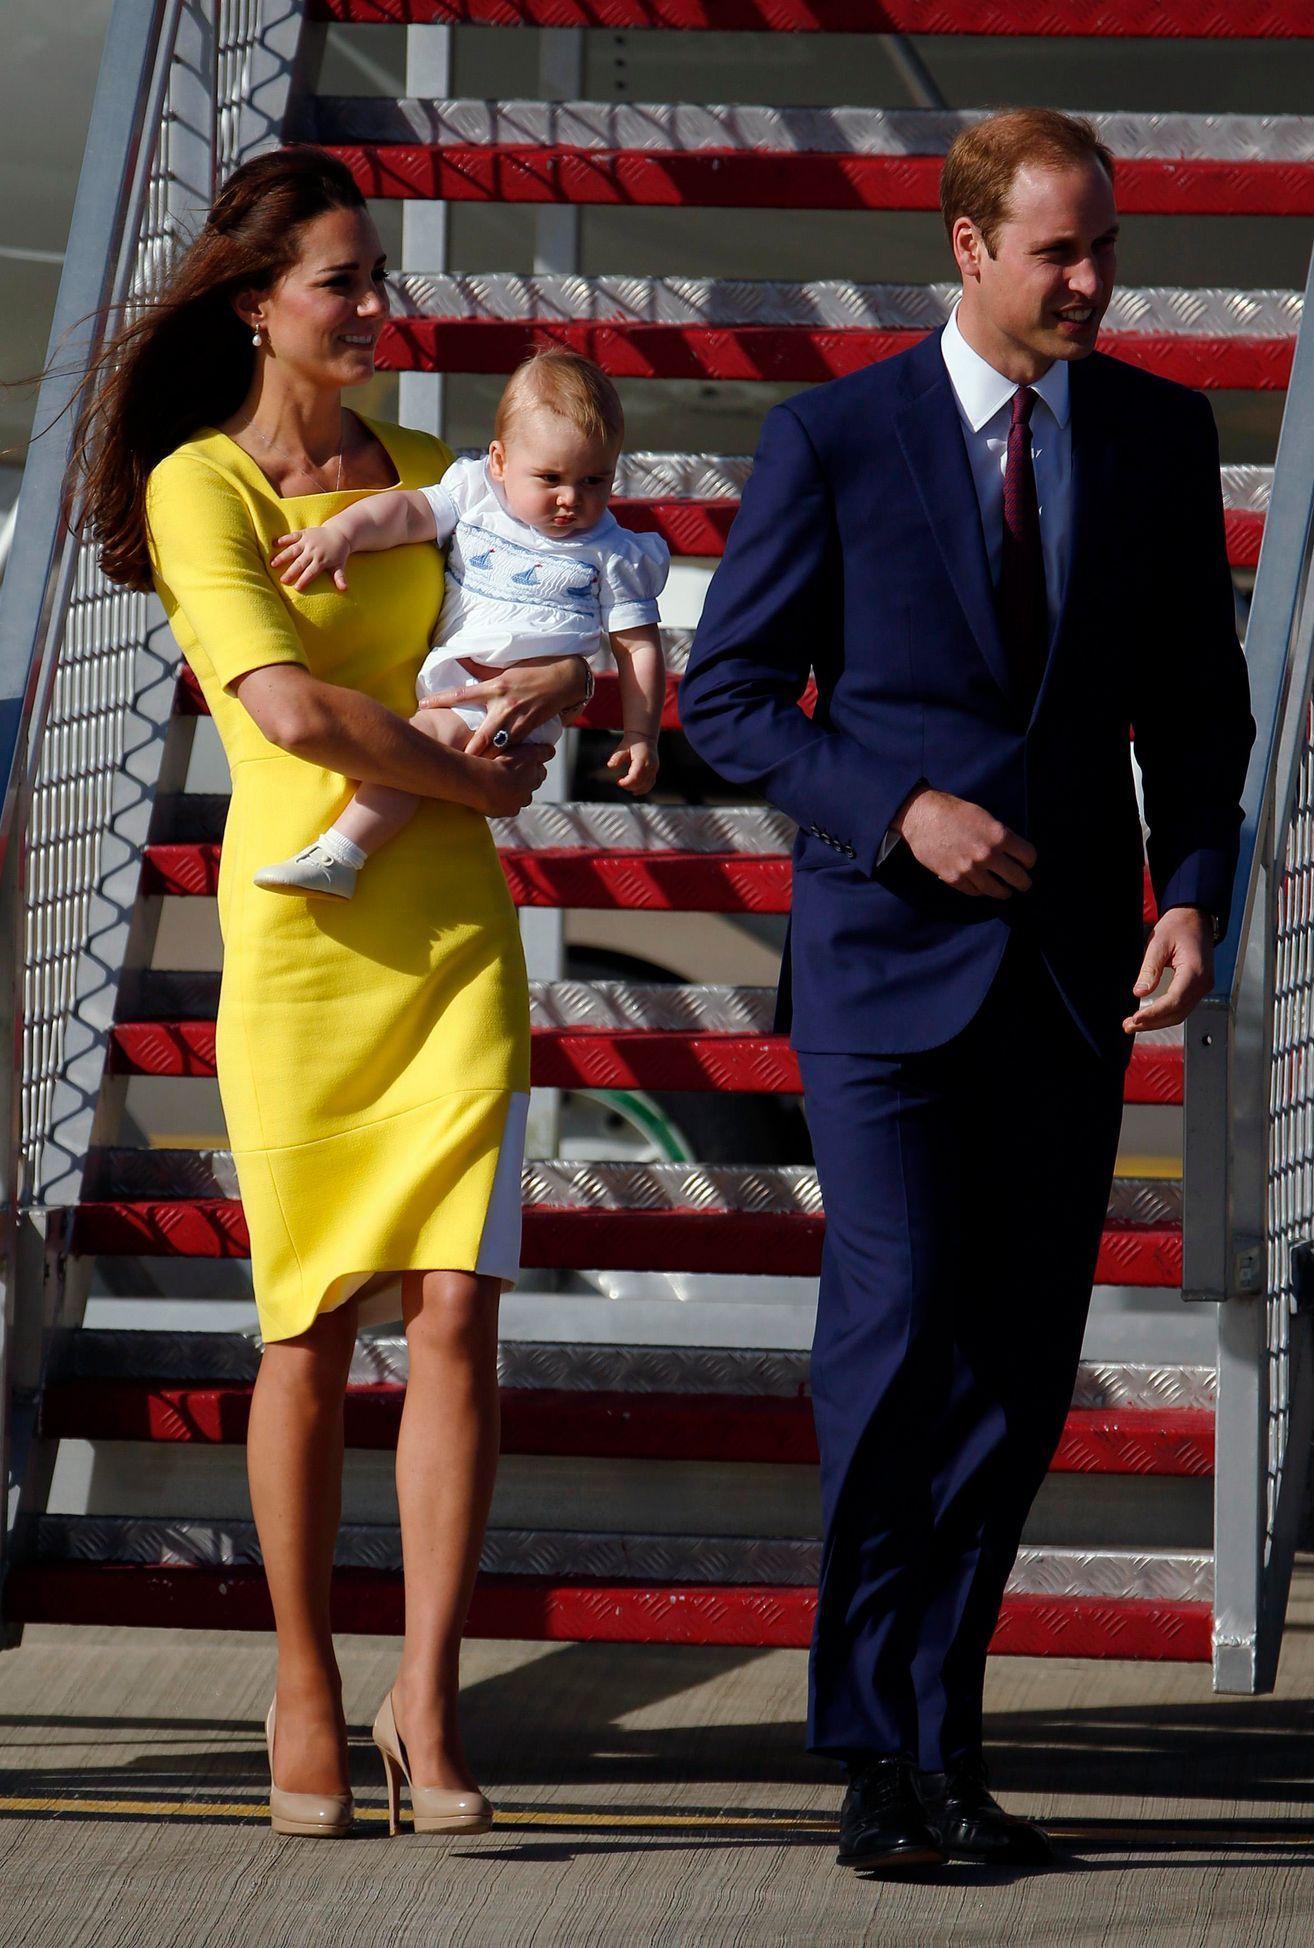 Vévodkyně Catherine, princ William a jejich syn George v Austrálii